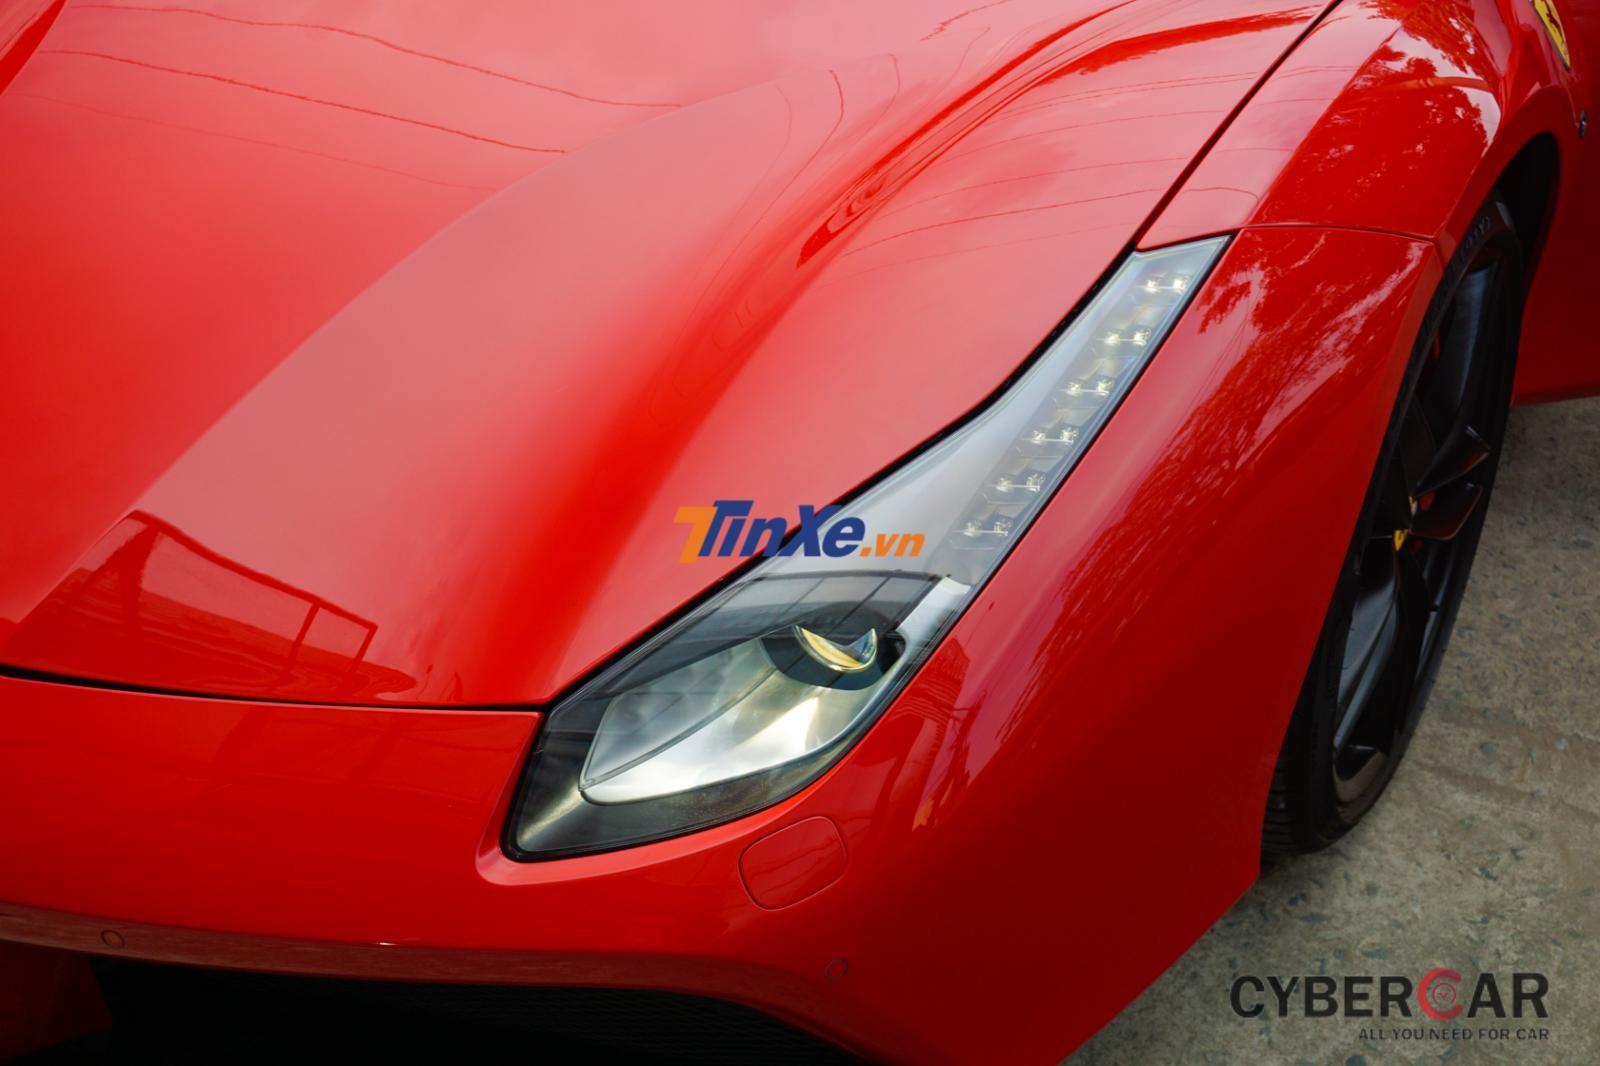 Siêu xe Ferrari 488 GTB có tốc độ tối đa 330 km/h